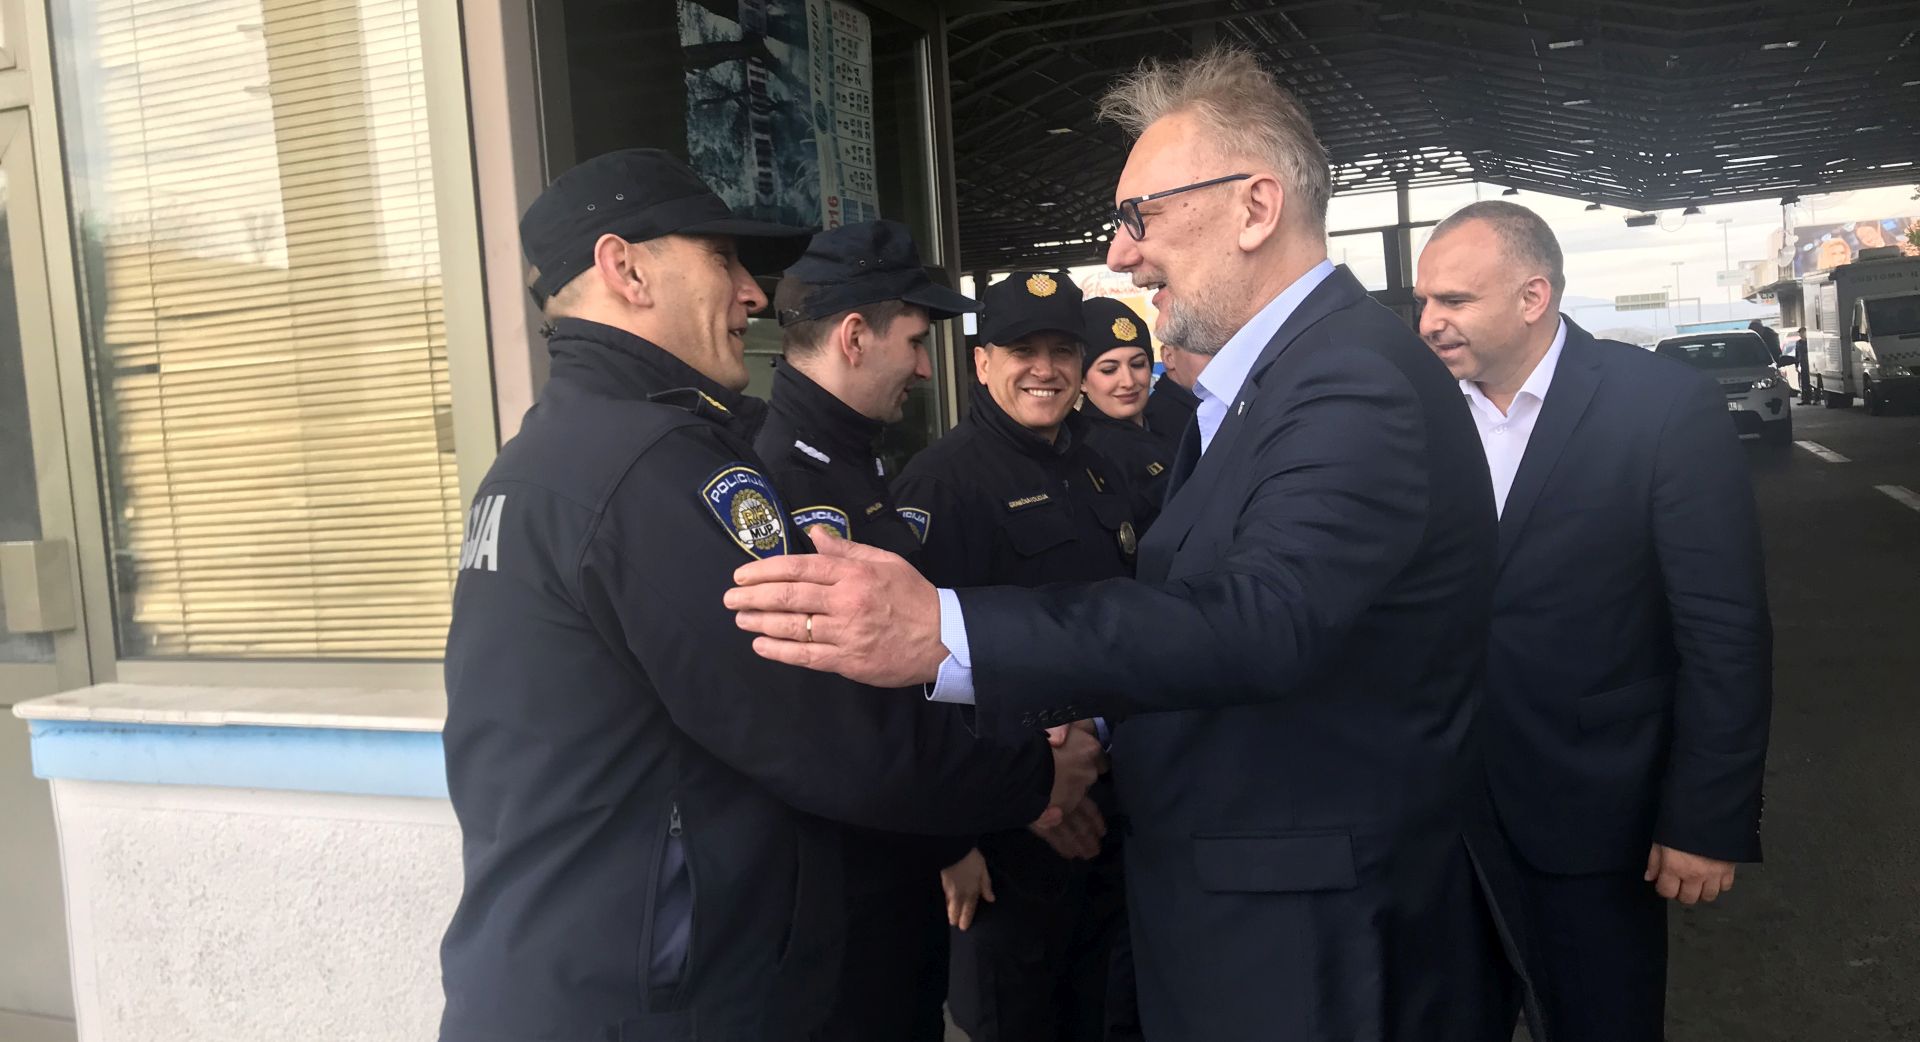 Skoplje, 26.02.2019 - Ministar unutarnjih poslova Davor Božinović sastao se sa hrvatskom graničnom policijom. Na fotografiji Davor Božinović.  Foto HINA/ MUP/ dkas